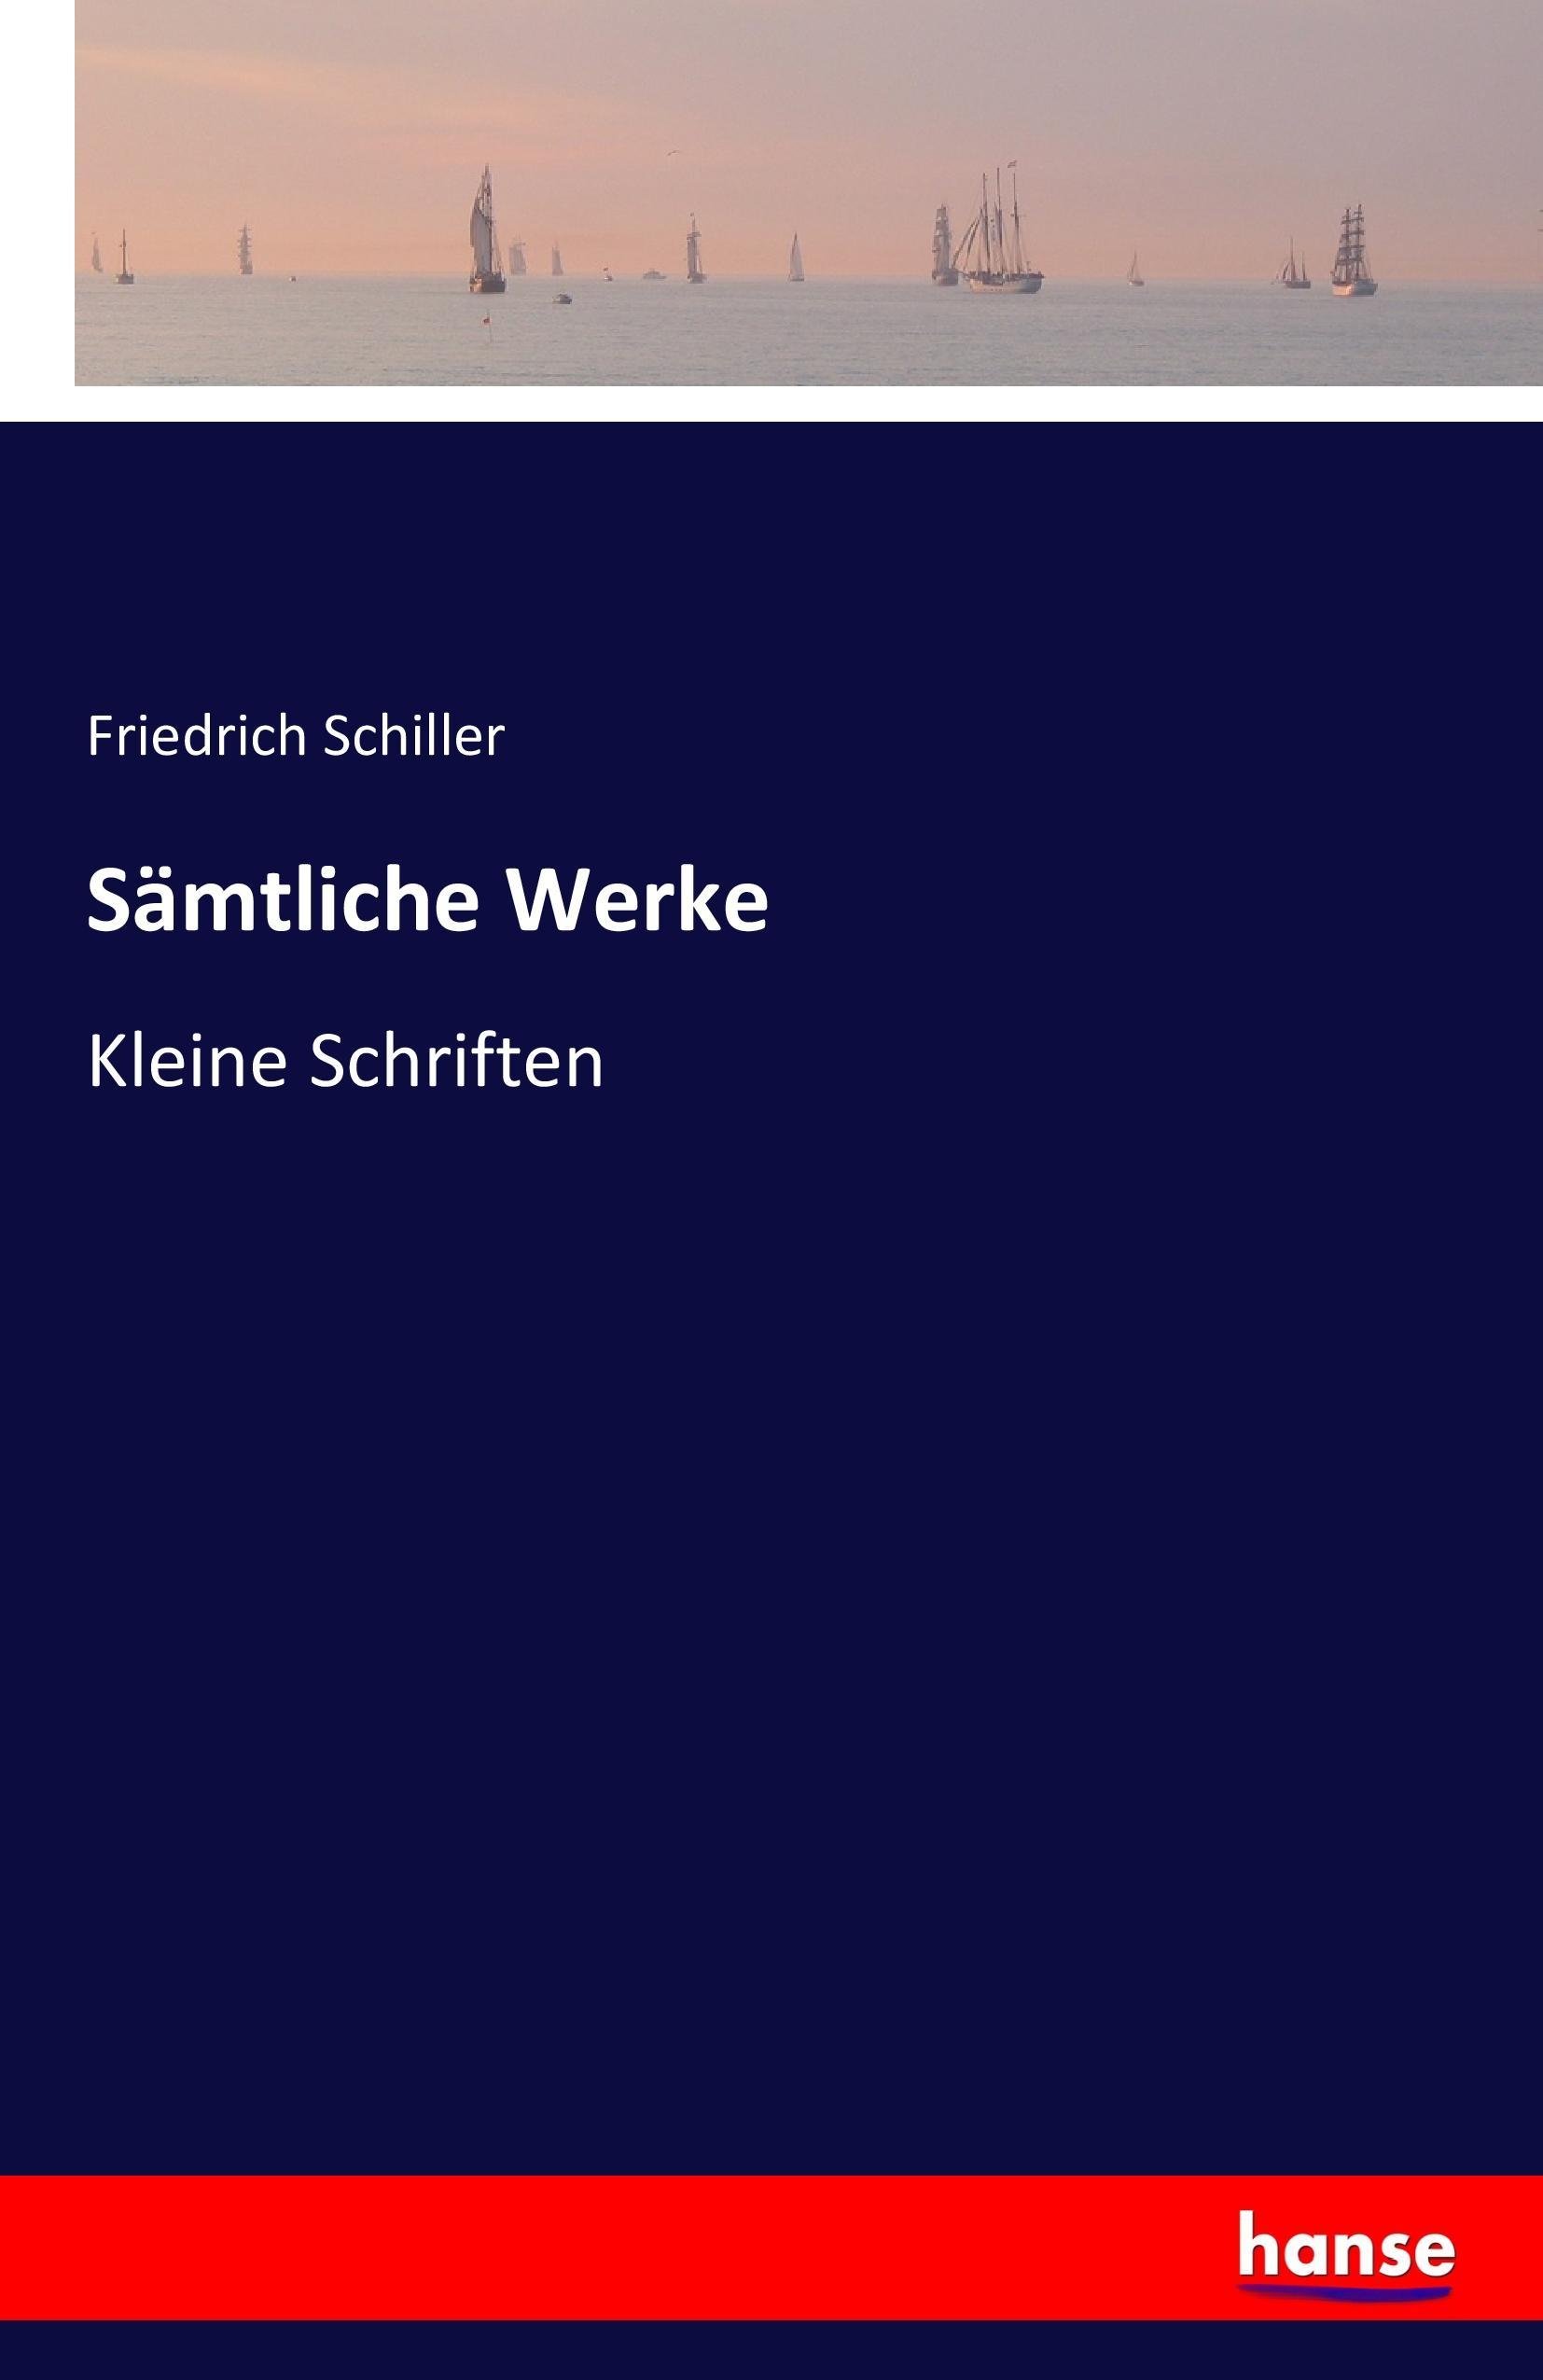 Sämtliche Werke | Kleine Schriften | Friedrich Schiller | Taschenbuch | Paperback | 268 S. | Deutsch | 2016 | hansebooks | EAN 9783741133626 - Schiller, Friedrich